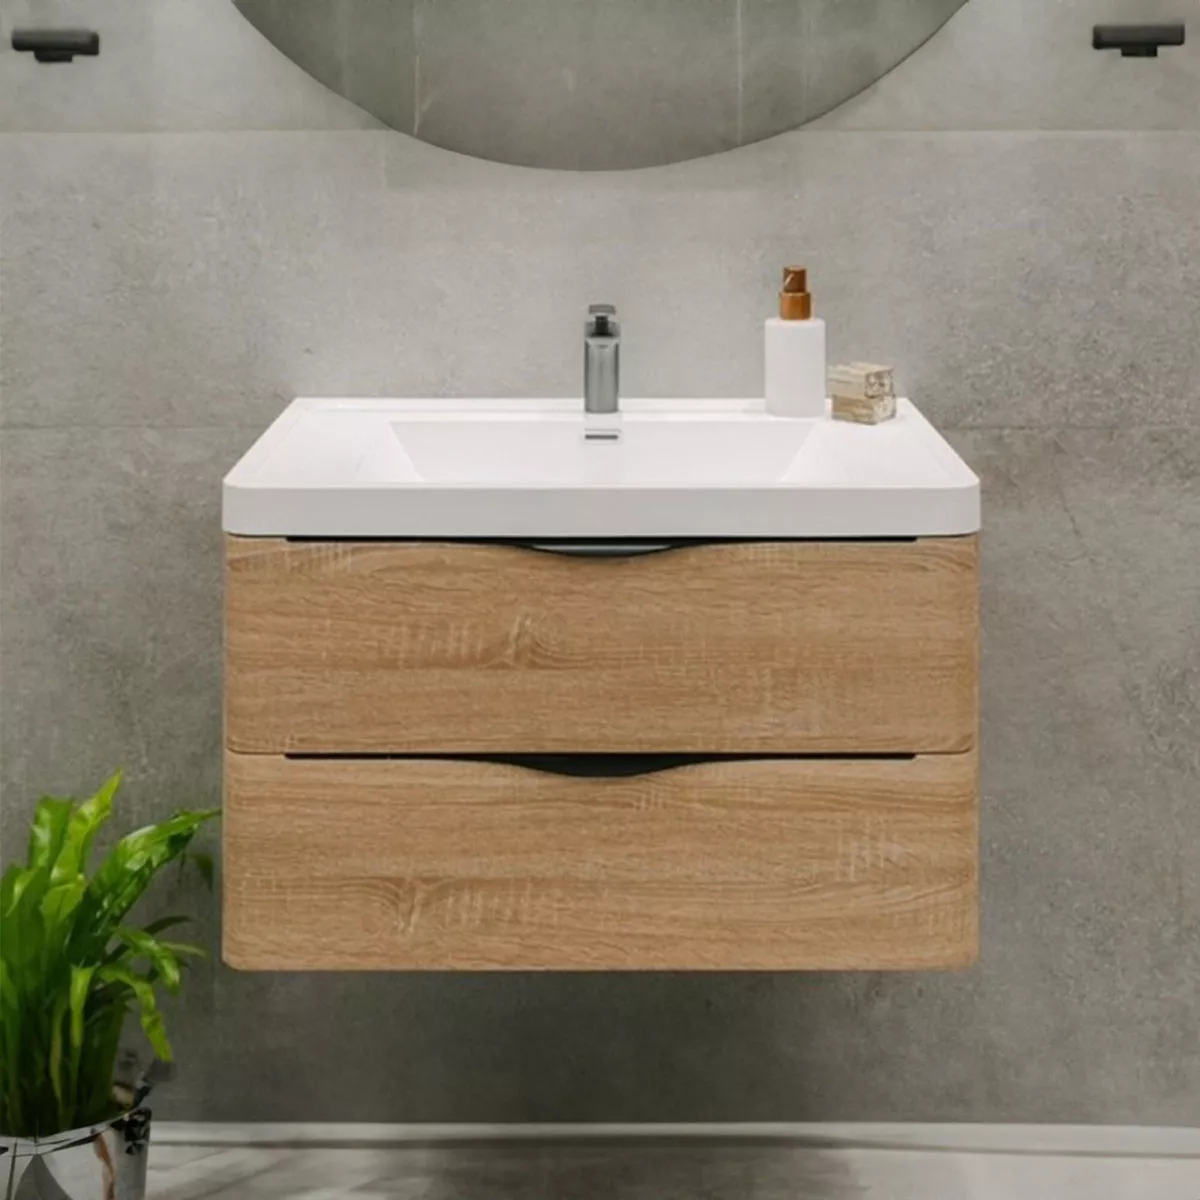 Tercera imagen para búsqueda de mueble baño madera